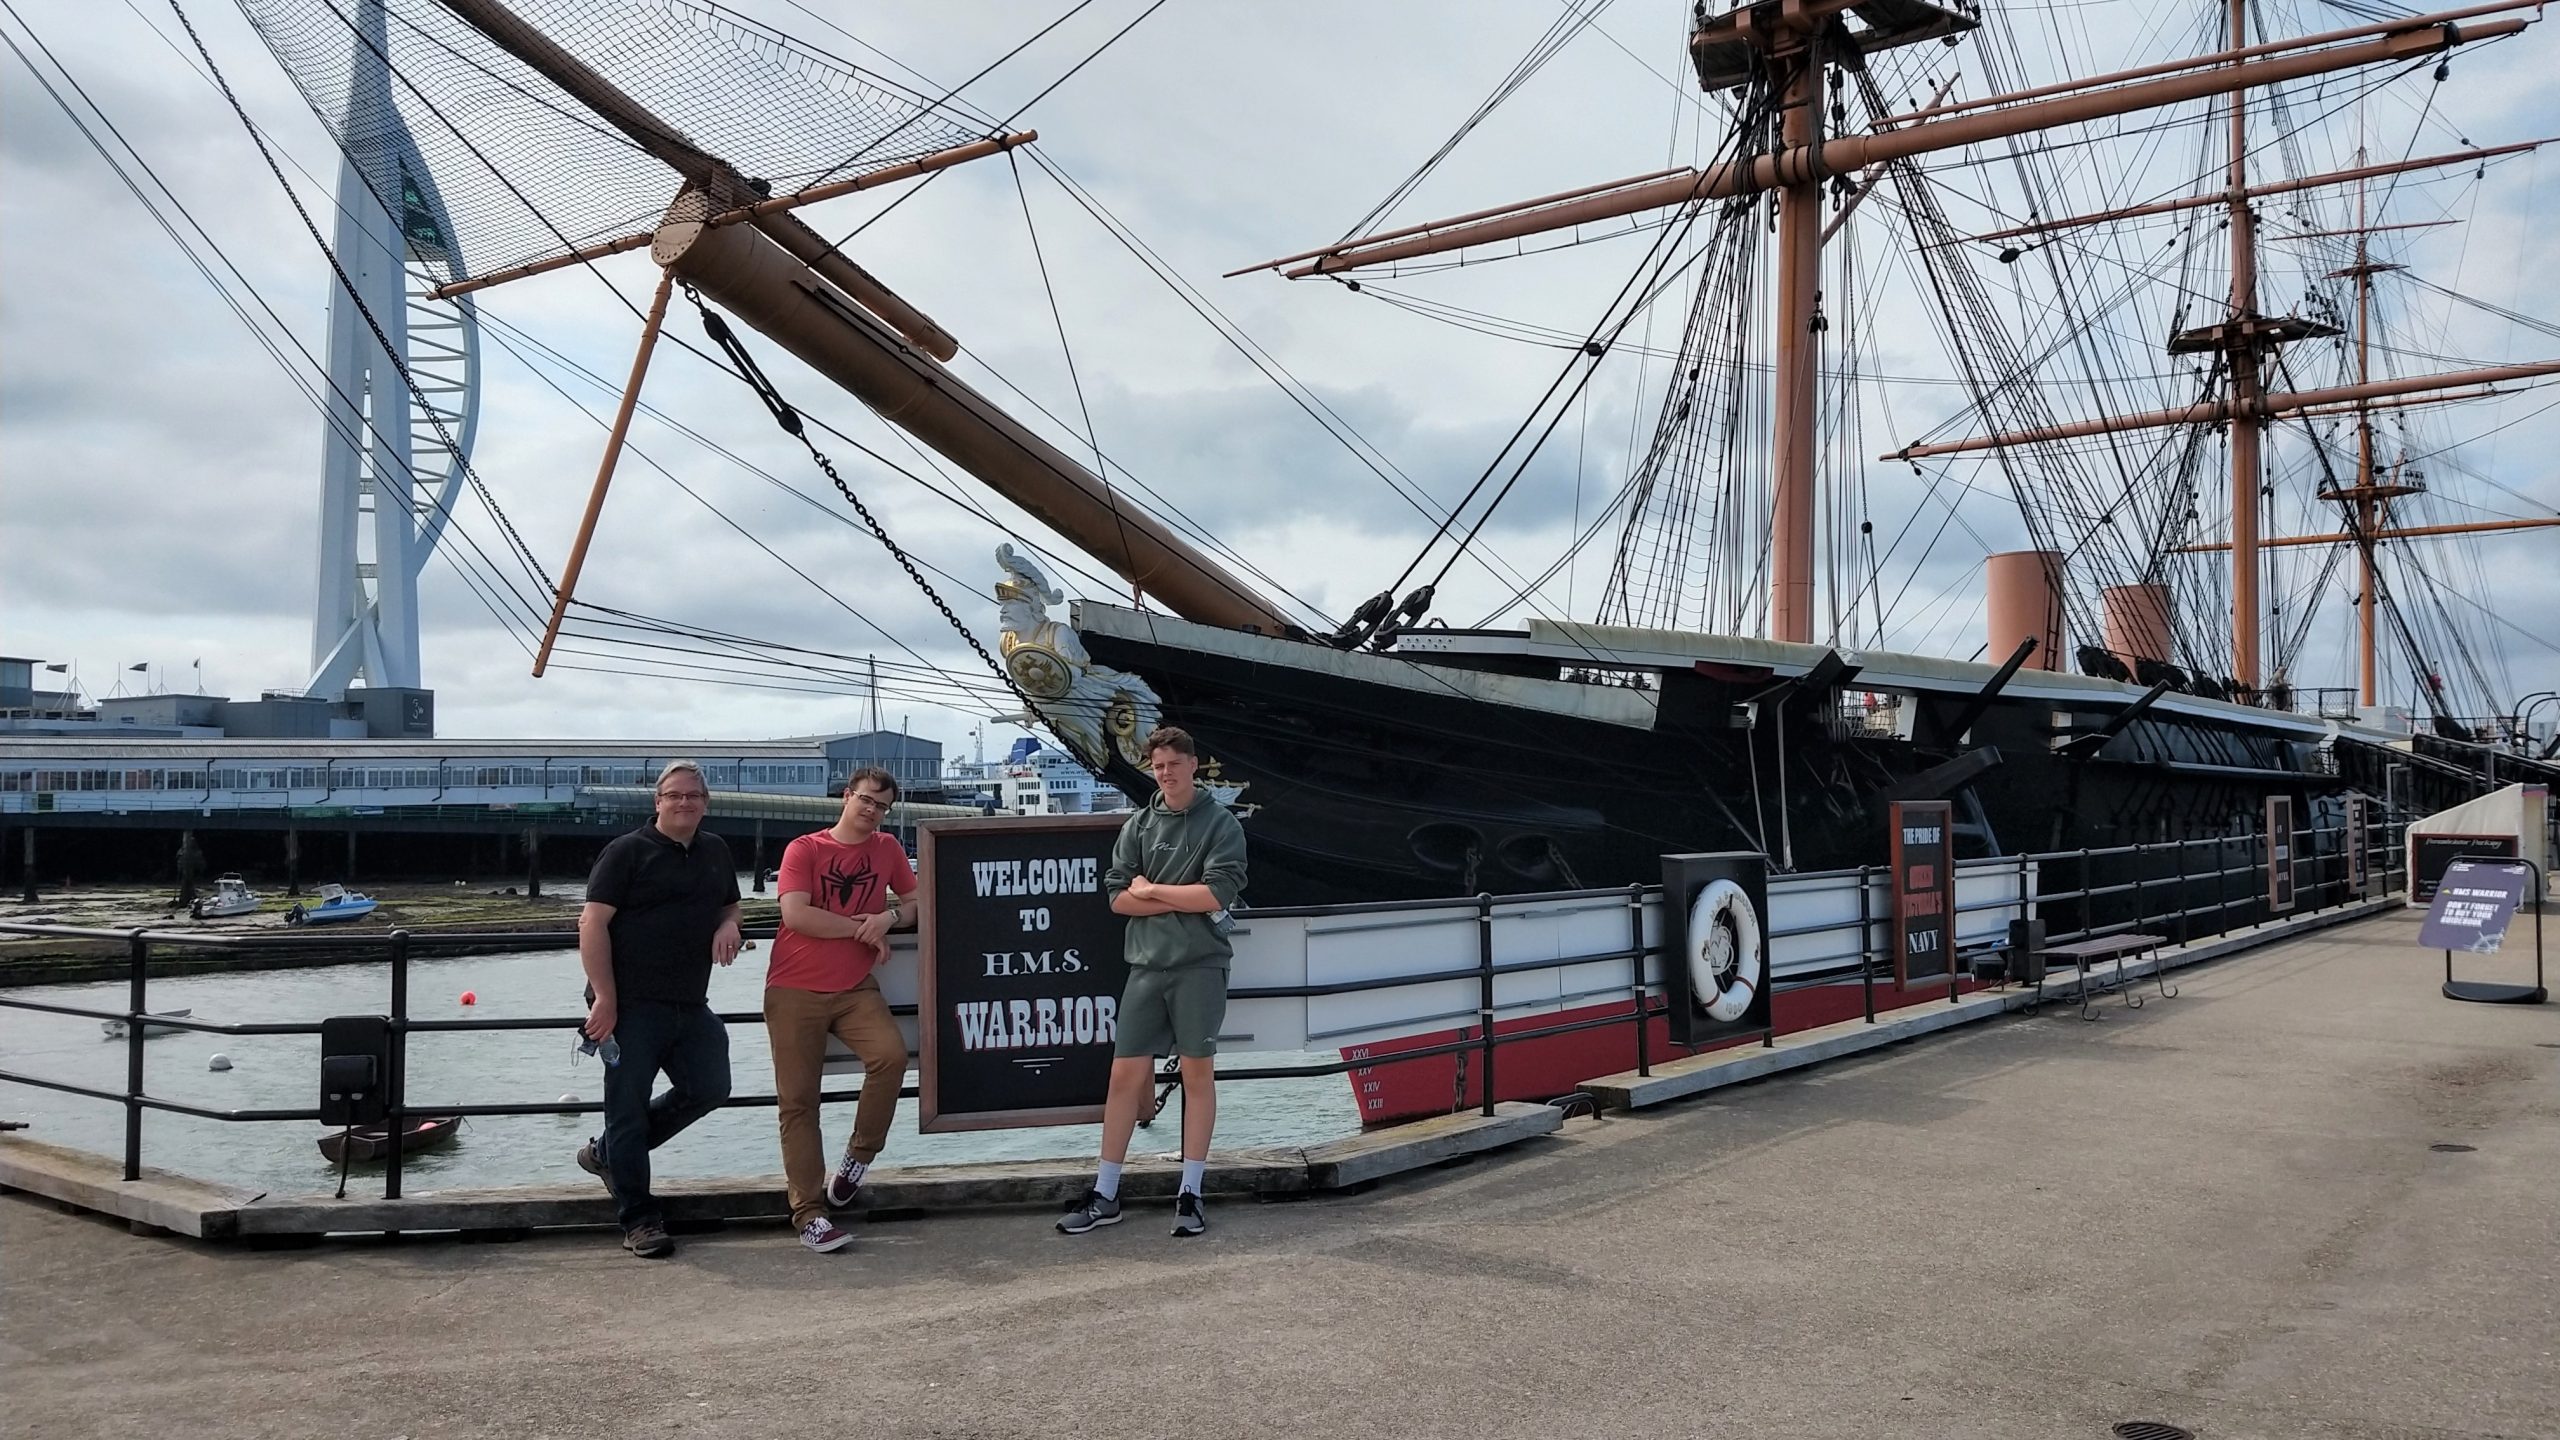 HMS Warrior, Portsmouth Historic Dockyard, museum